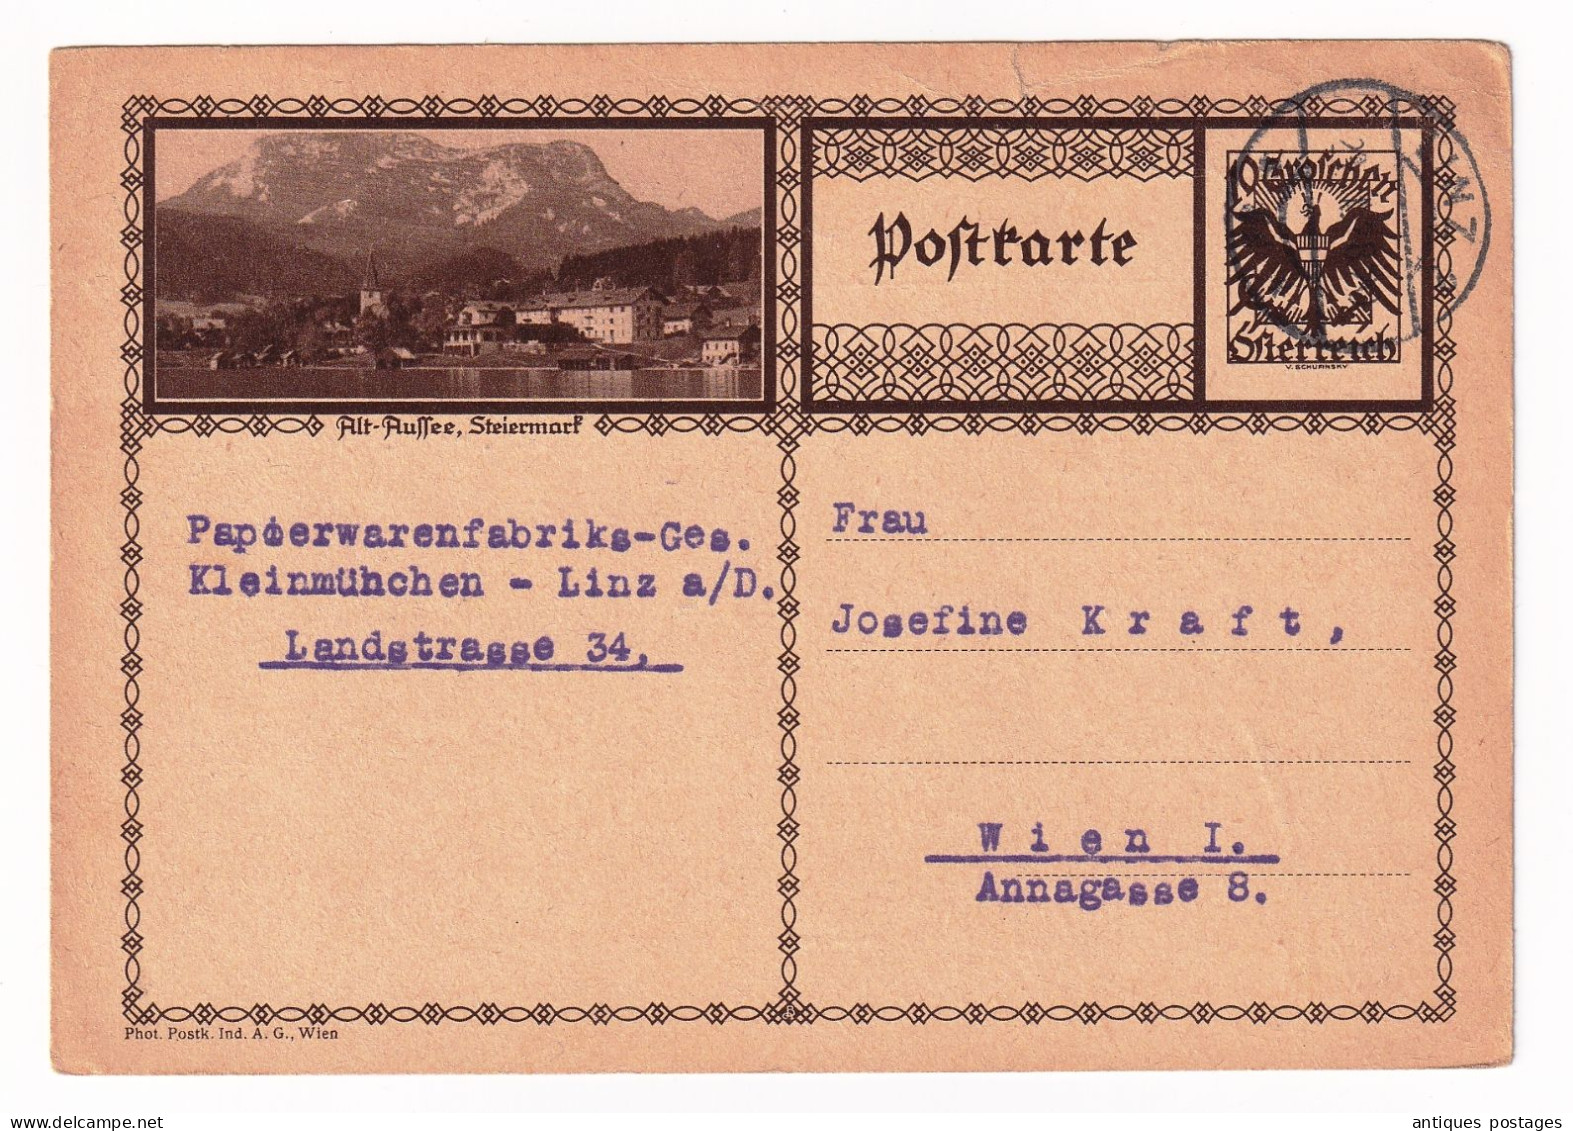 Postkarte 1928 Linz Papierwarenfabrik Österreich Austria Autriche Wien Josefine Kraft - Cartes Postales